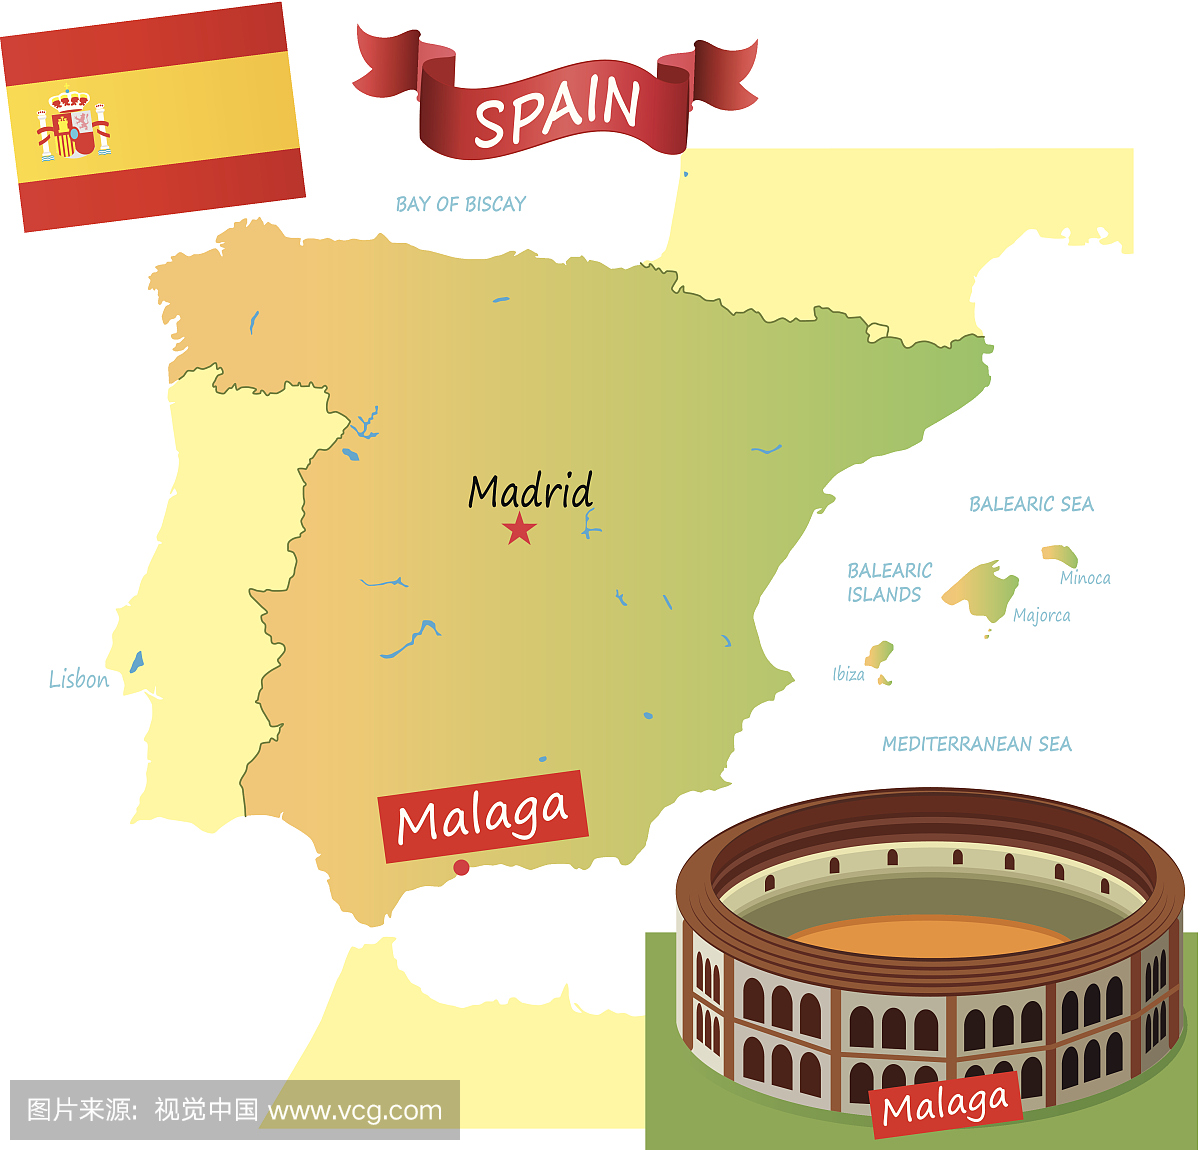 西班牙,西班牙风景,西班牙风俗,西班牙生活